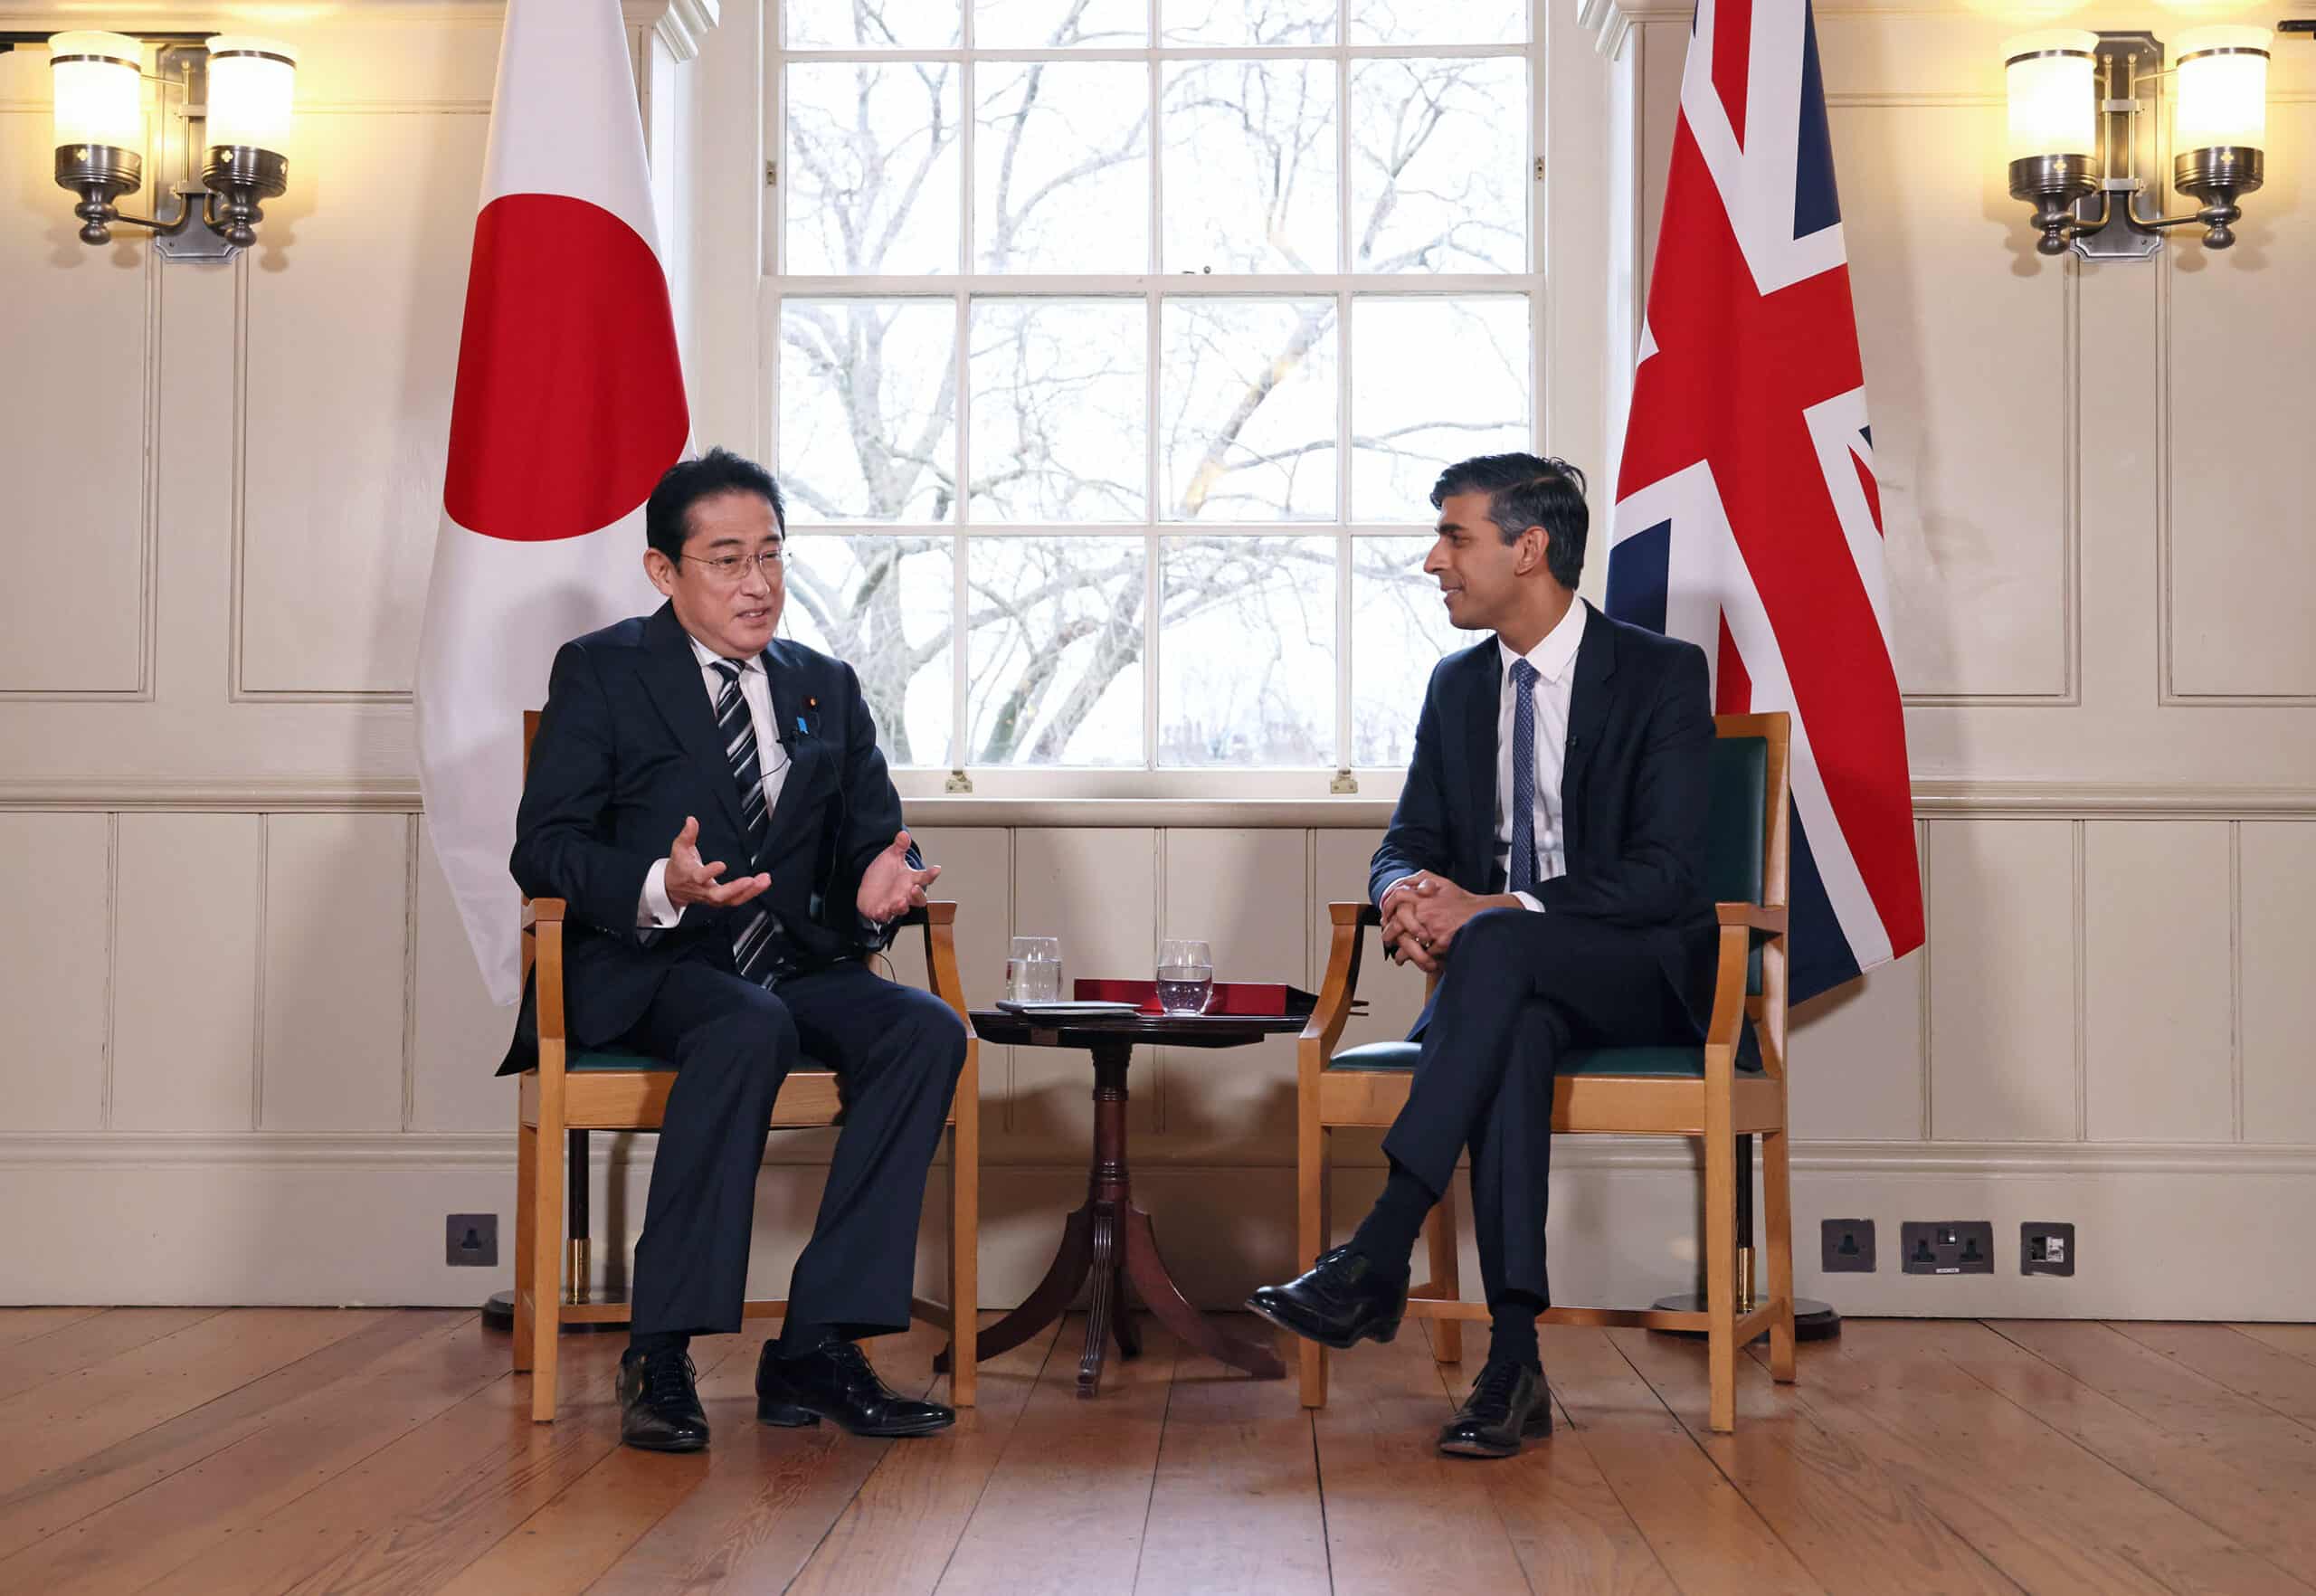 بعد التوقيع على اتفاق هيروشيما .. هل تستطيع المملكة المتحدة واليابان تستعدان لمنافسة القوى العظمى؟